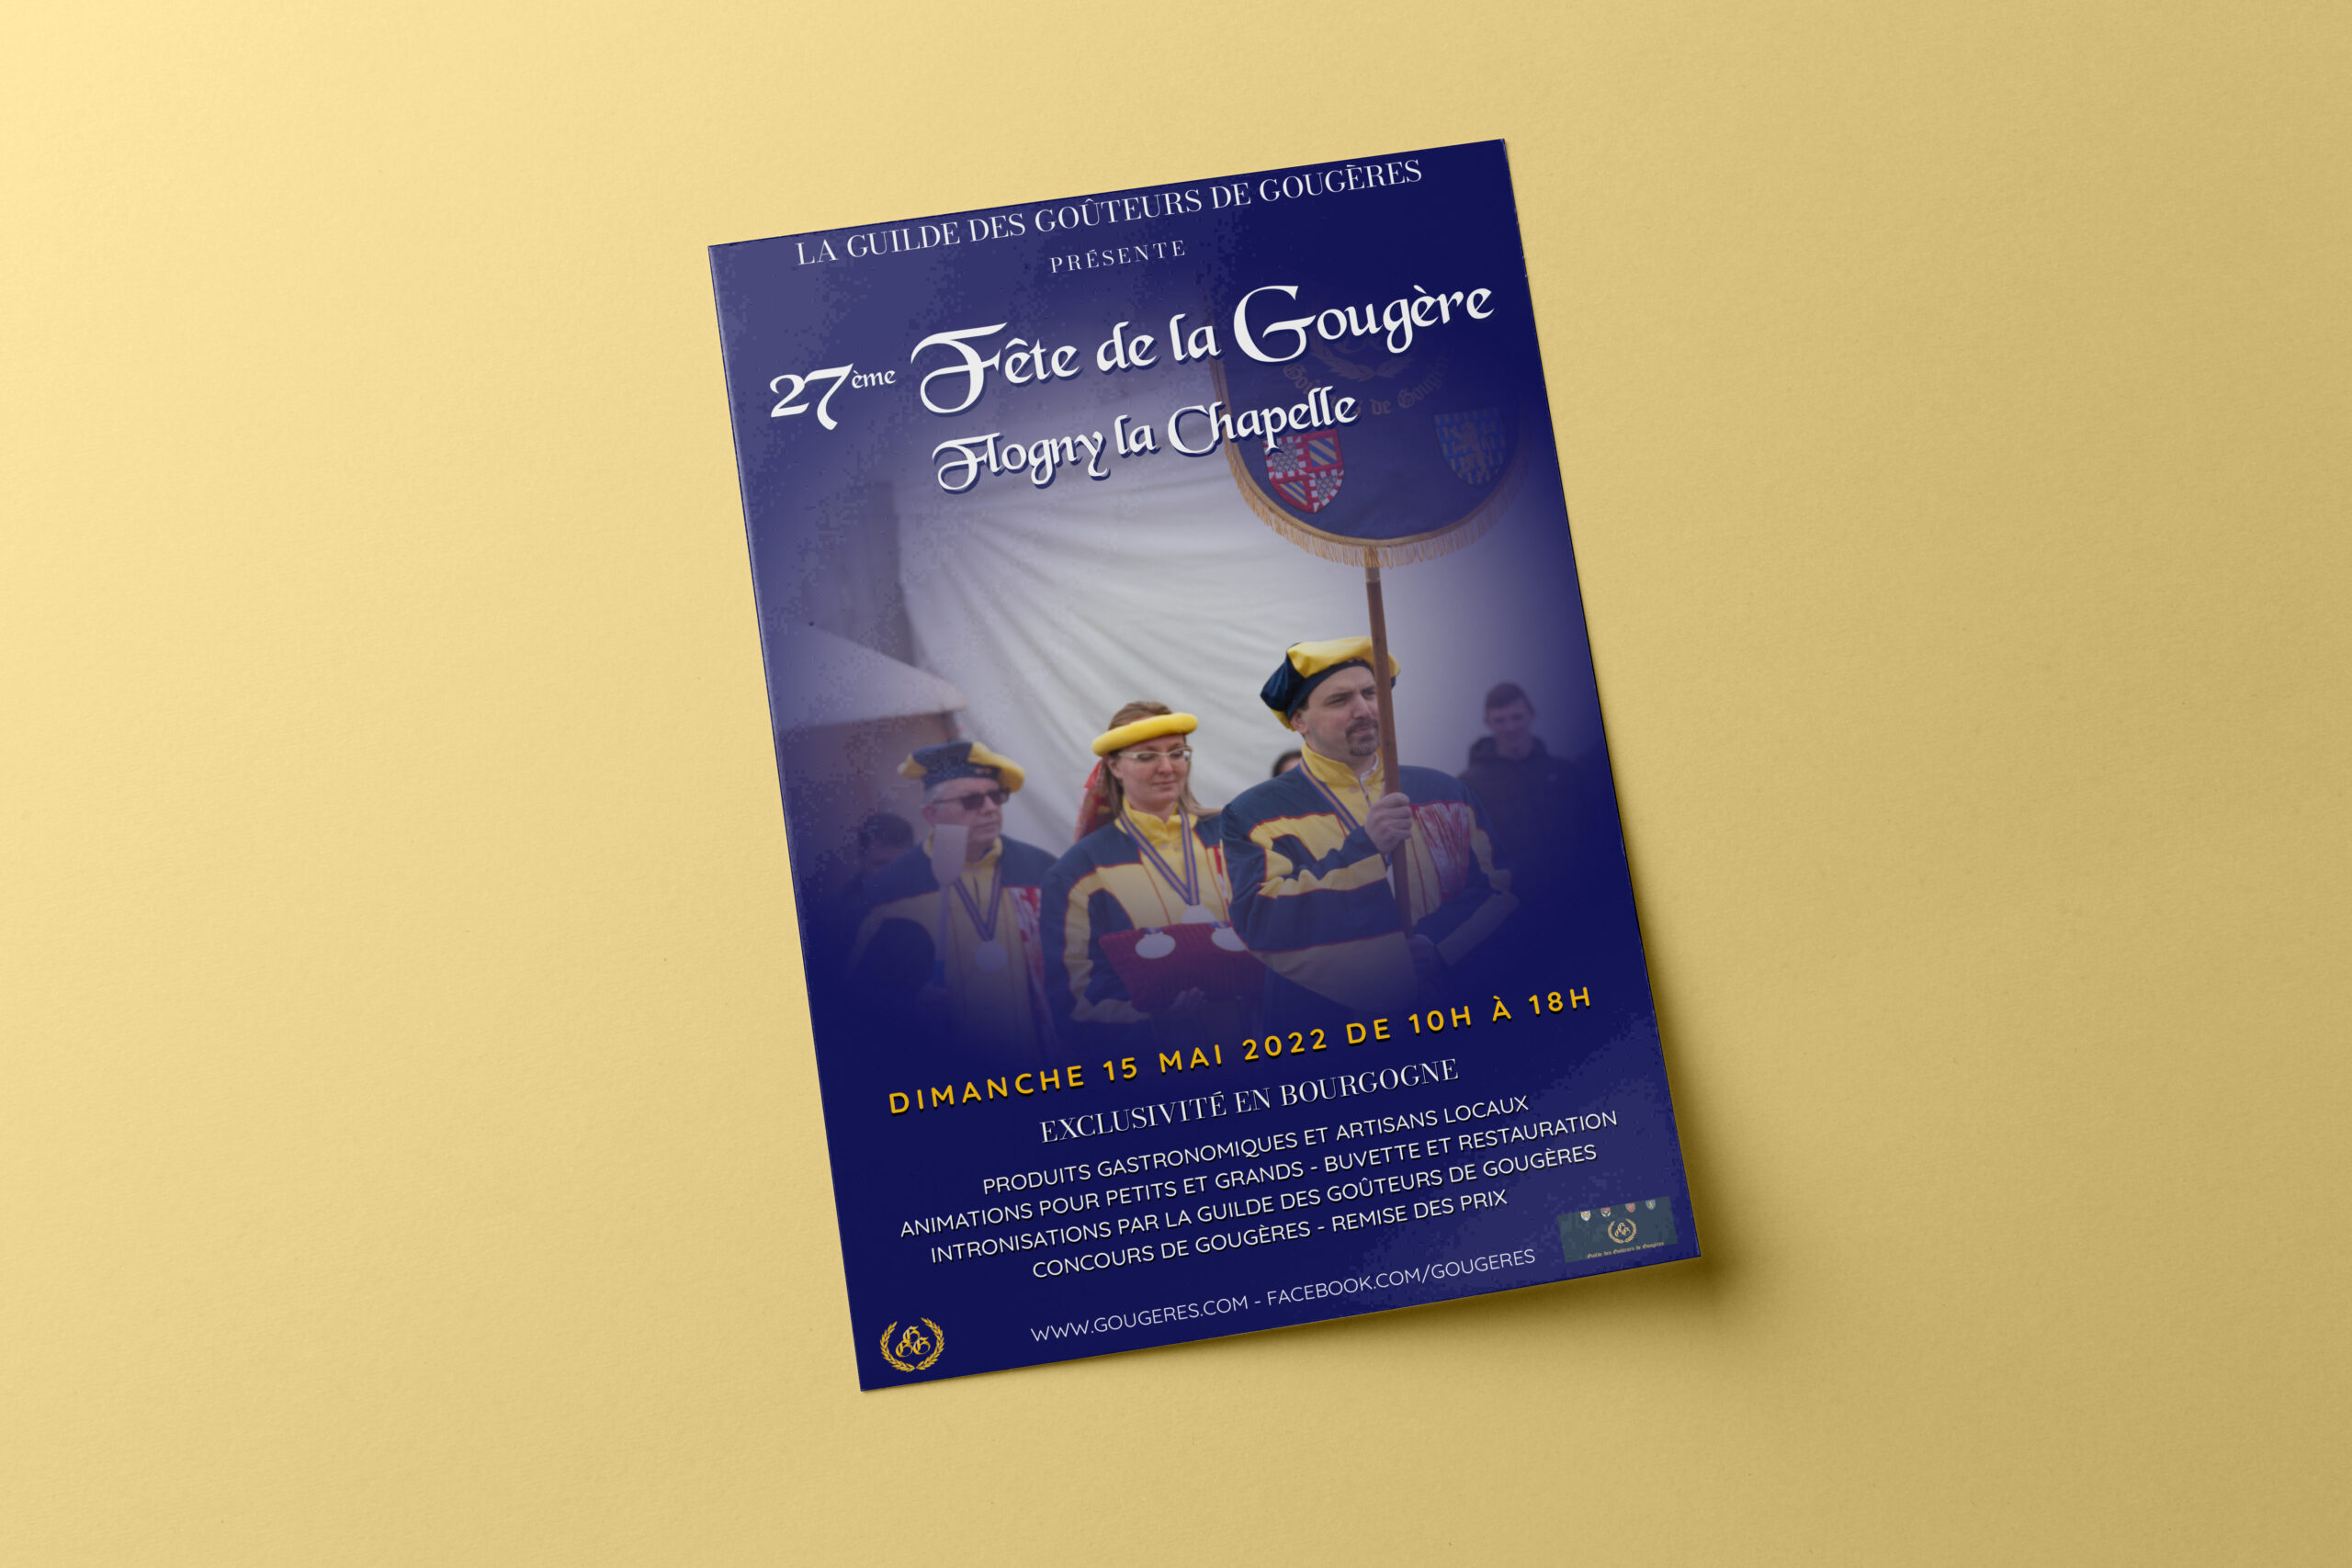 Création Graphique 27ème Fête de la Gougère – Flogny la Chapelle